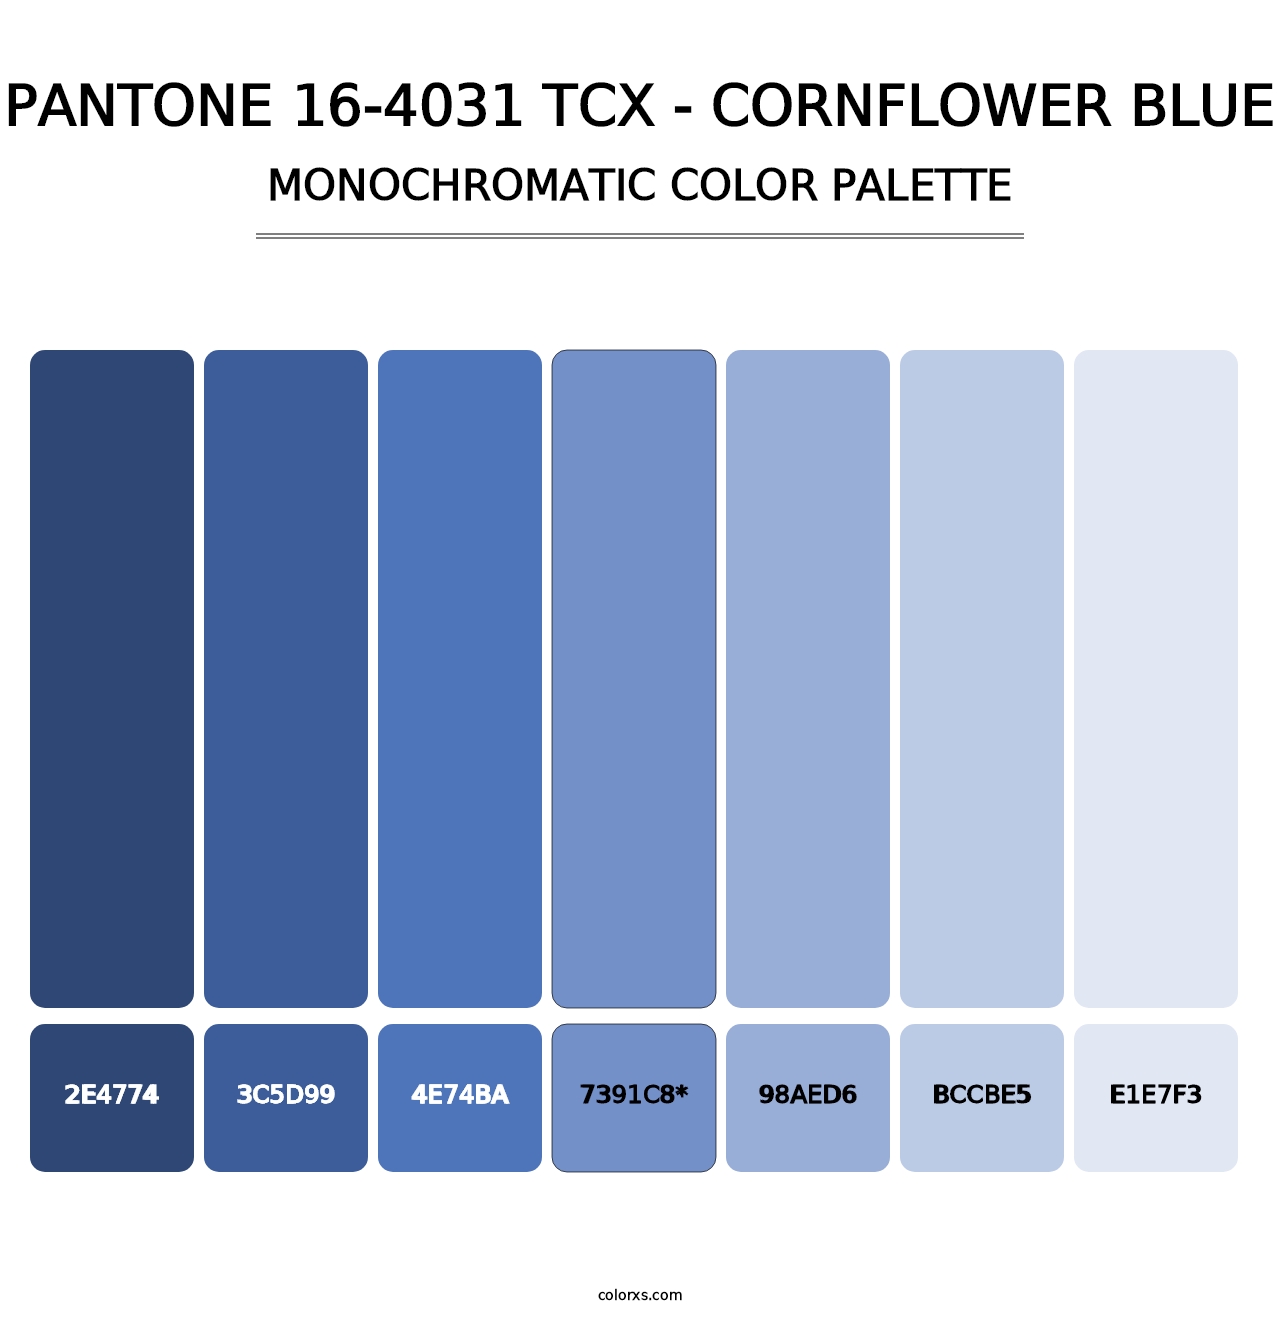 PANTONE 16-4031 TCX - Cornflower Blue - Monochromatic Color Palette